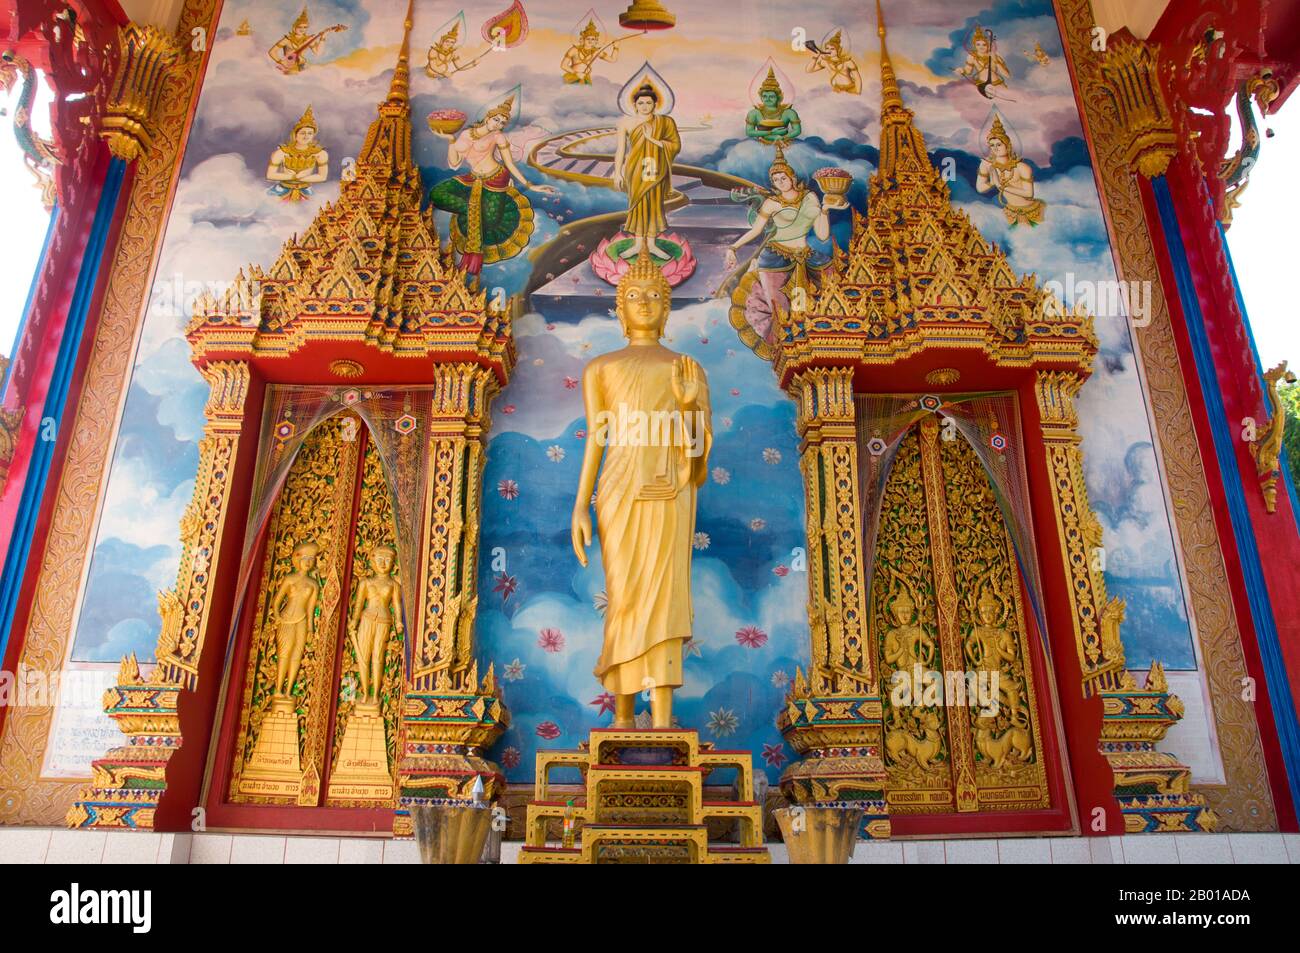 Thailand: Buddha-Statue und Wandmalereien auf dem Viharn im Wat Phra Nang Sang, Phuket. Wat Phra Nang Sang wurde im 19.. Jahrhundert von einer einheimischen Dame guter Familie gegründet, daher der Name phra nang sang, was soviel bedeutet wie ‘erbaut von der verehrten Dame’. Ihr richtiger Name scheint vergessen worden zu sein. Nach lokalen Überlieferungen reiste sie auf einer Pilgerreise nach Sri Lanka und, um sich für ihre sichere Rückkehr zu bedanken, unterstützte sie den Bau dieses Tempels. Später wurde sie von einem lokalen Herrscher verfault, der ihr den Kopf abschneiden ließ, nur um festzustellen, dass ihr Blut vor Reinheit weiß floss. Stockfoto